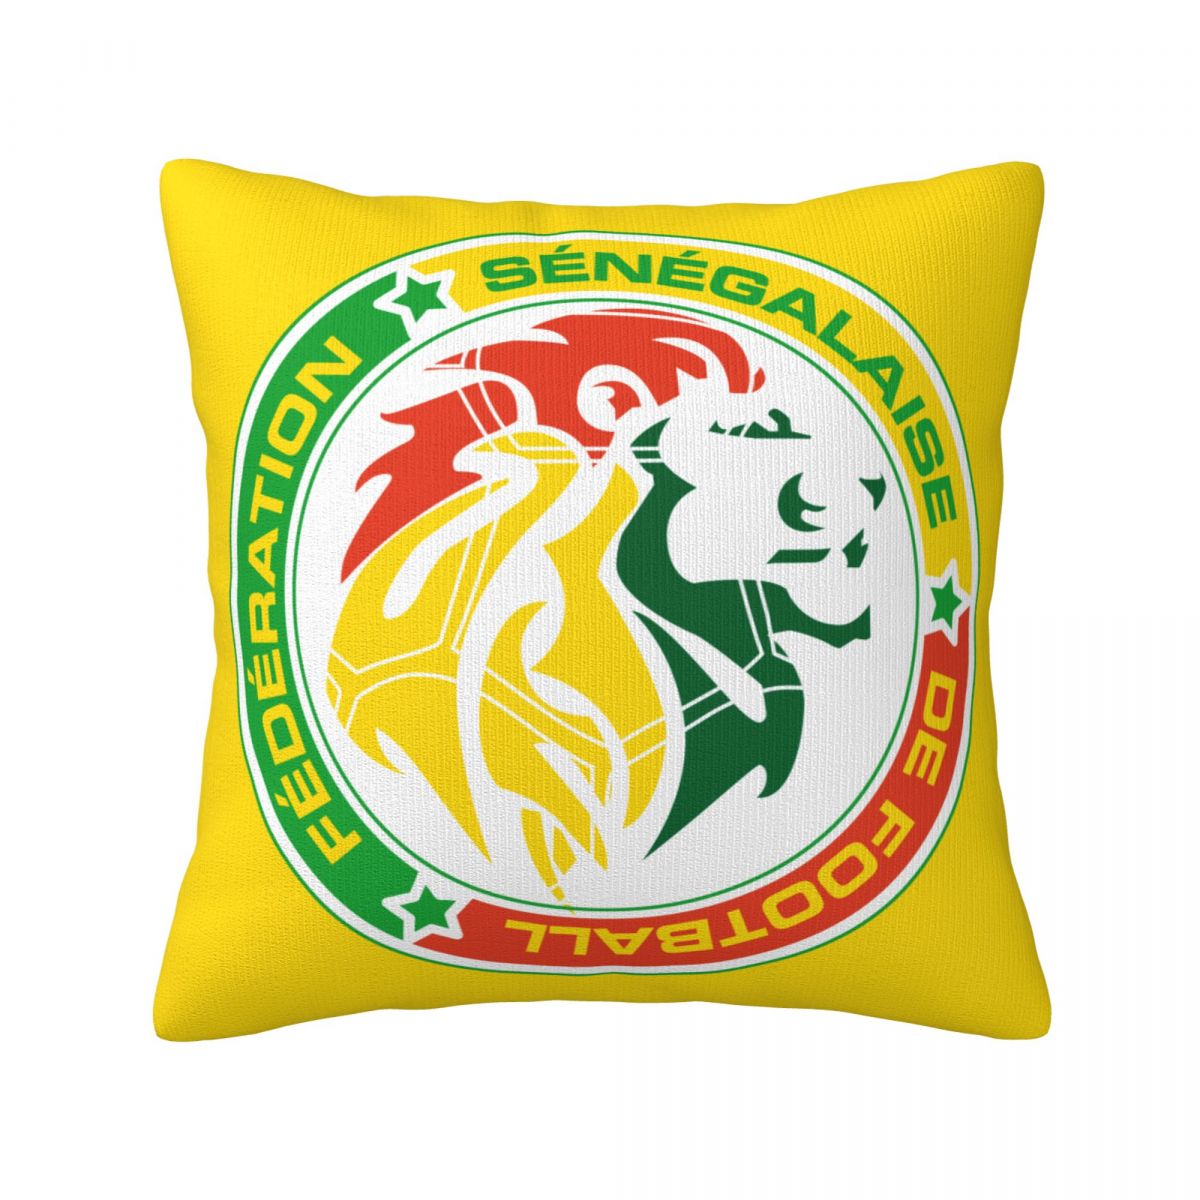 Senegal National Football Team Throw Pillows 18 x 18 inch